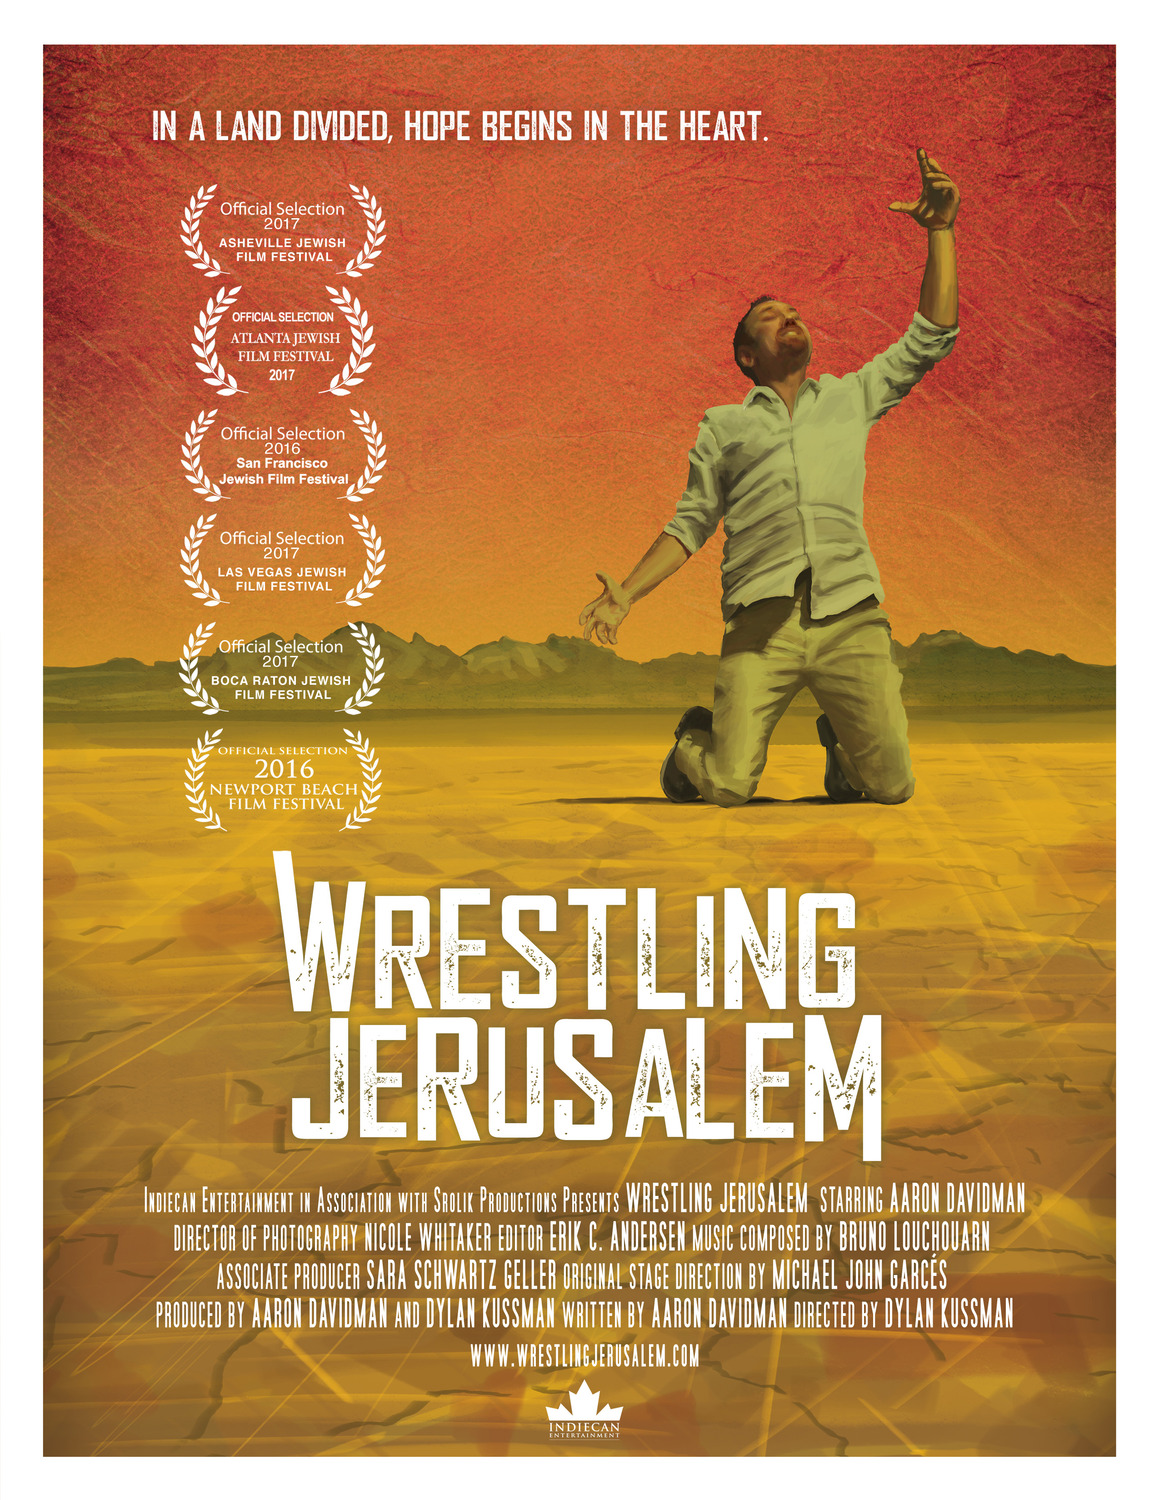 Extra Large Movie Poster Image for Wrestling Jerusalem 